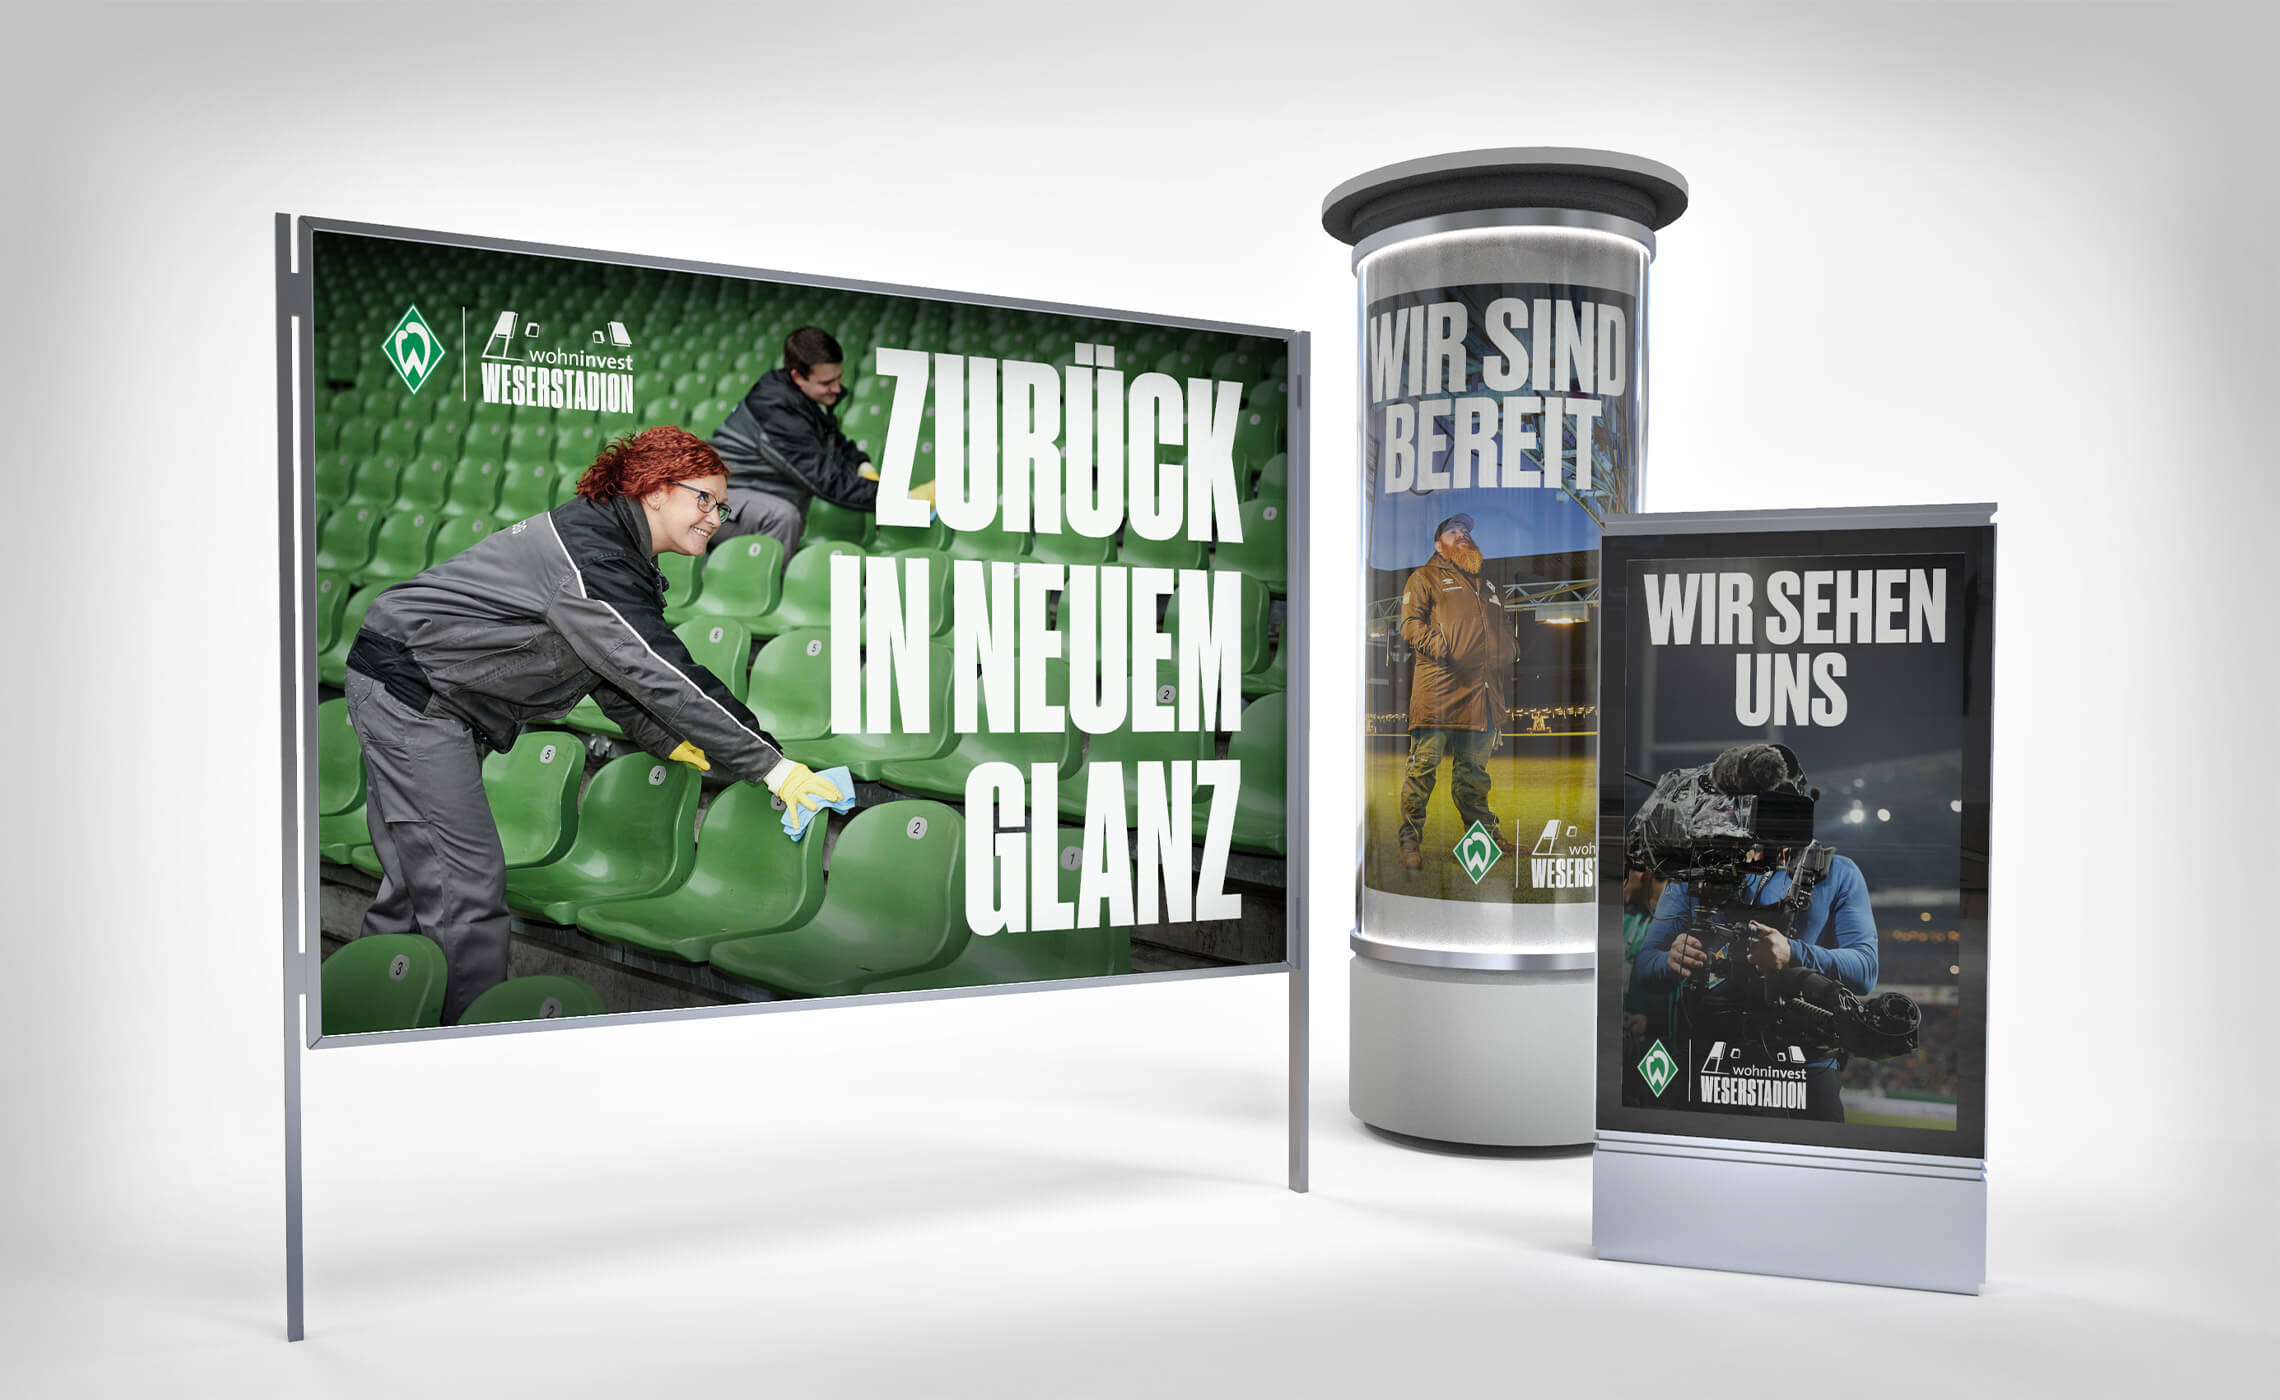 Dieses Bild zeigt eine Marketingkampagne mit Werder Bremen zum Rückrundenstart der Fussball-Bundesliga.